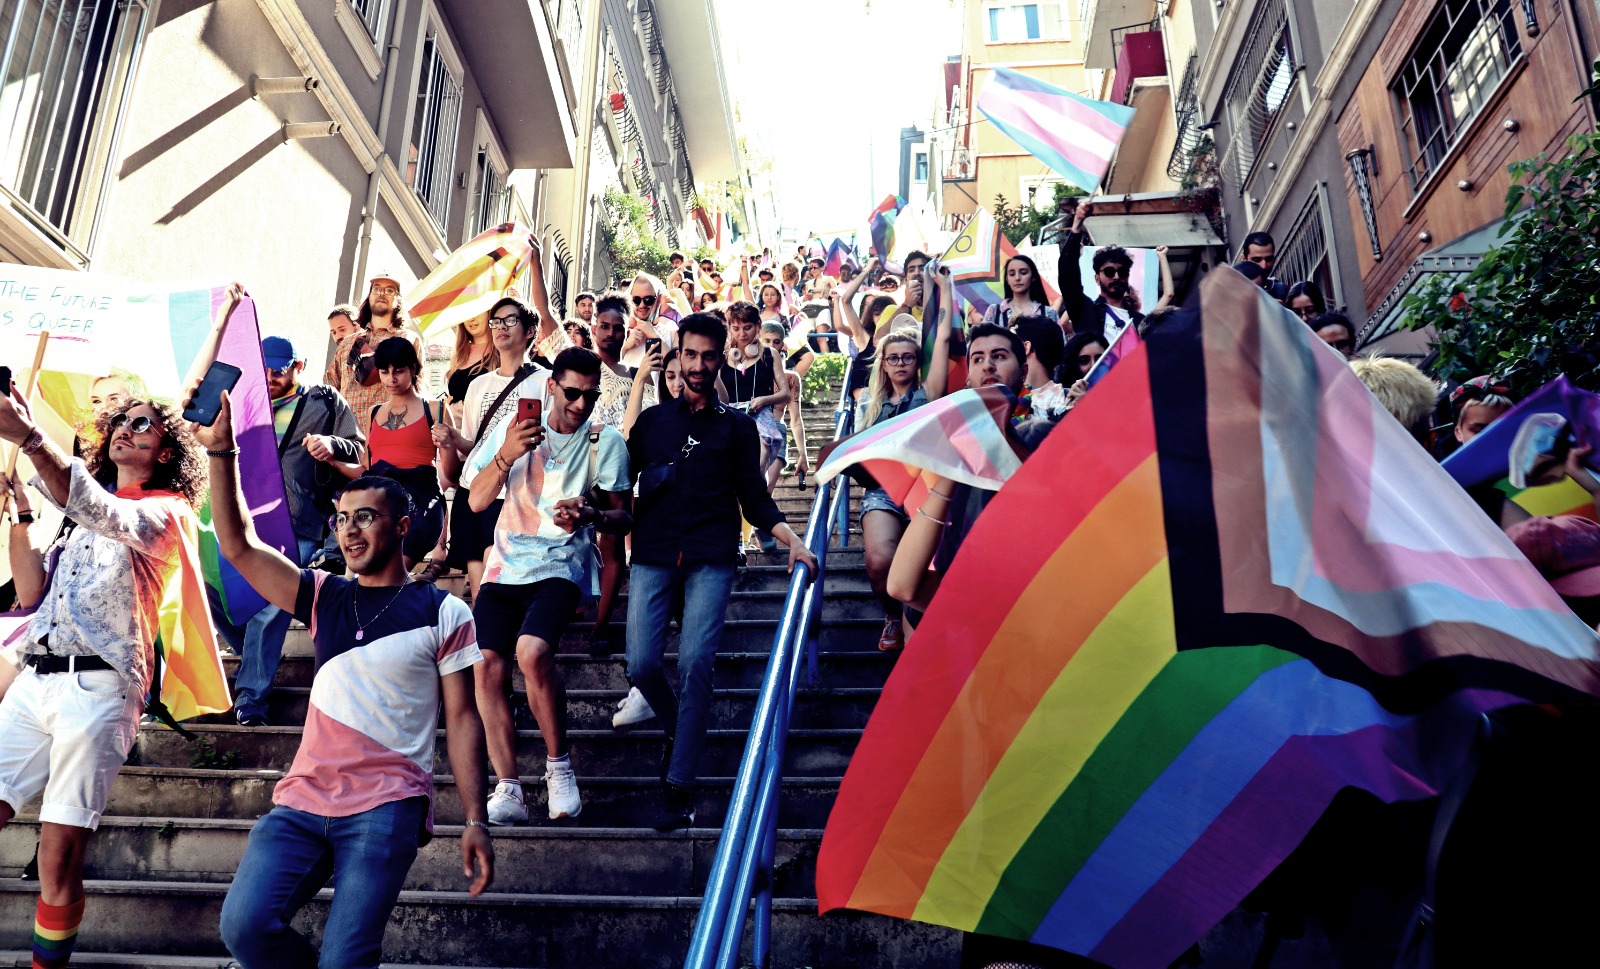 2022 İstanbul Onur Yürüyüşü’nde gözaltına alınan çocuklara da dava açılmadı | Kaos GL - LGBTİ+ Haber Portalı Haber